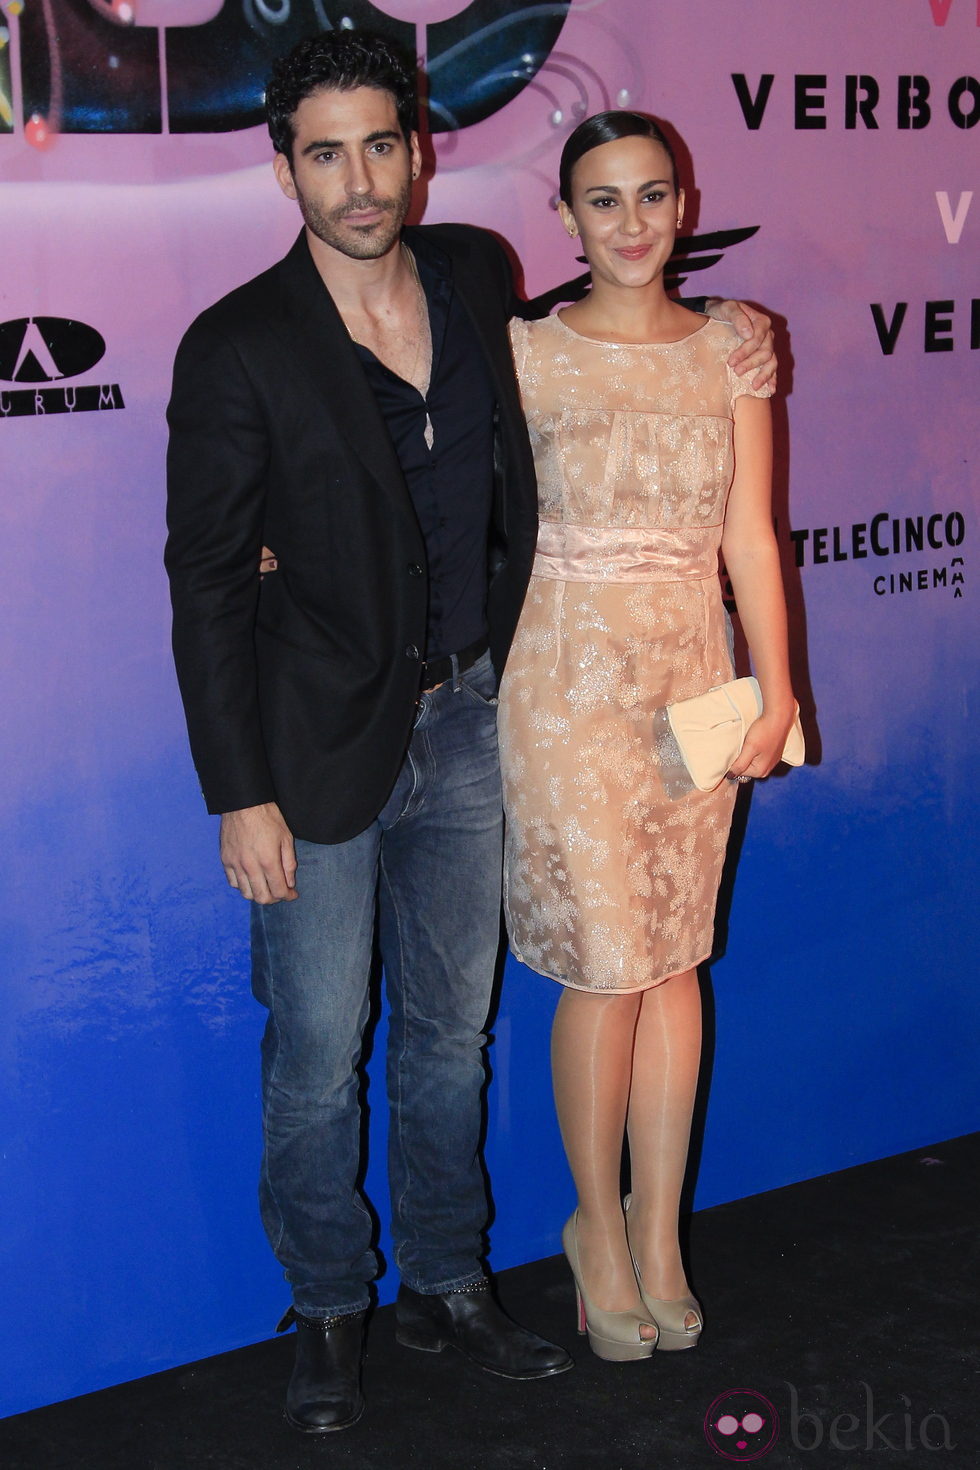 Miguel Ángel Silvestre y Alba García en el estreno de 'Verbo' en Madrid